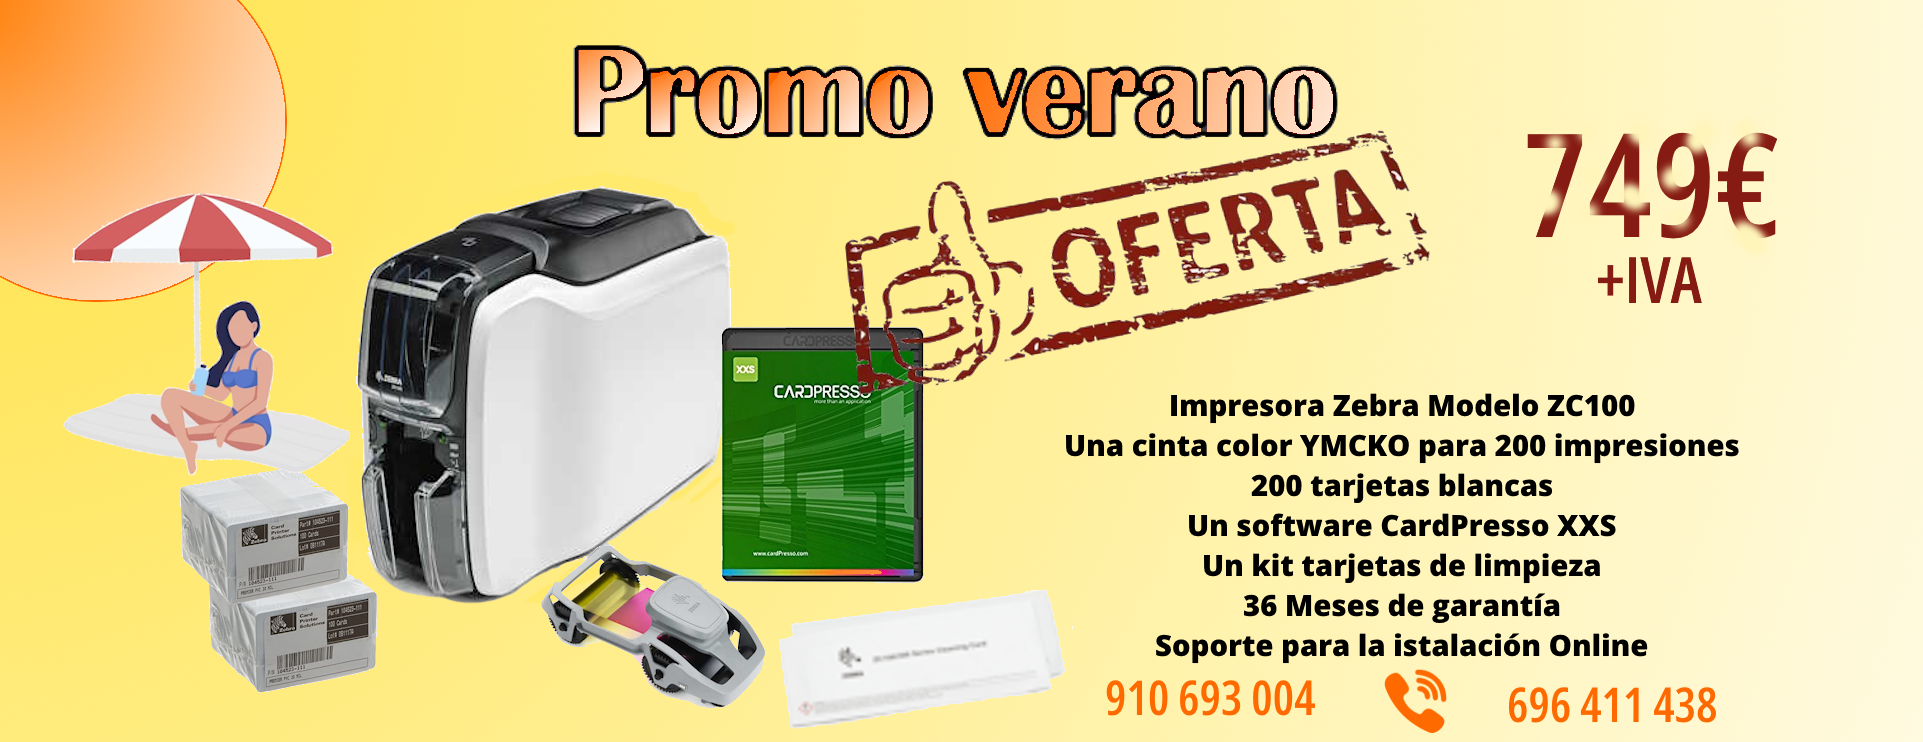 Promo Verano 2023 - OLD_Sipcards: La mejor oferta de Impresoras y tarjetas PVC